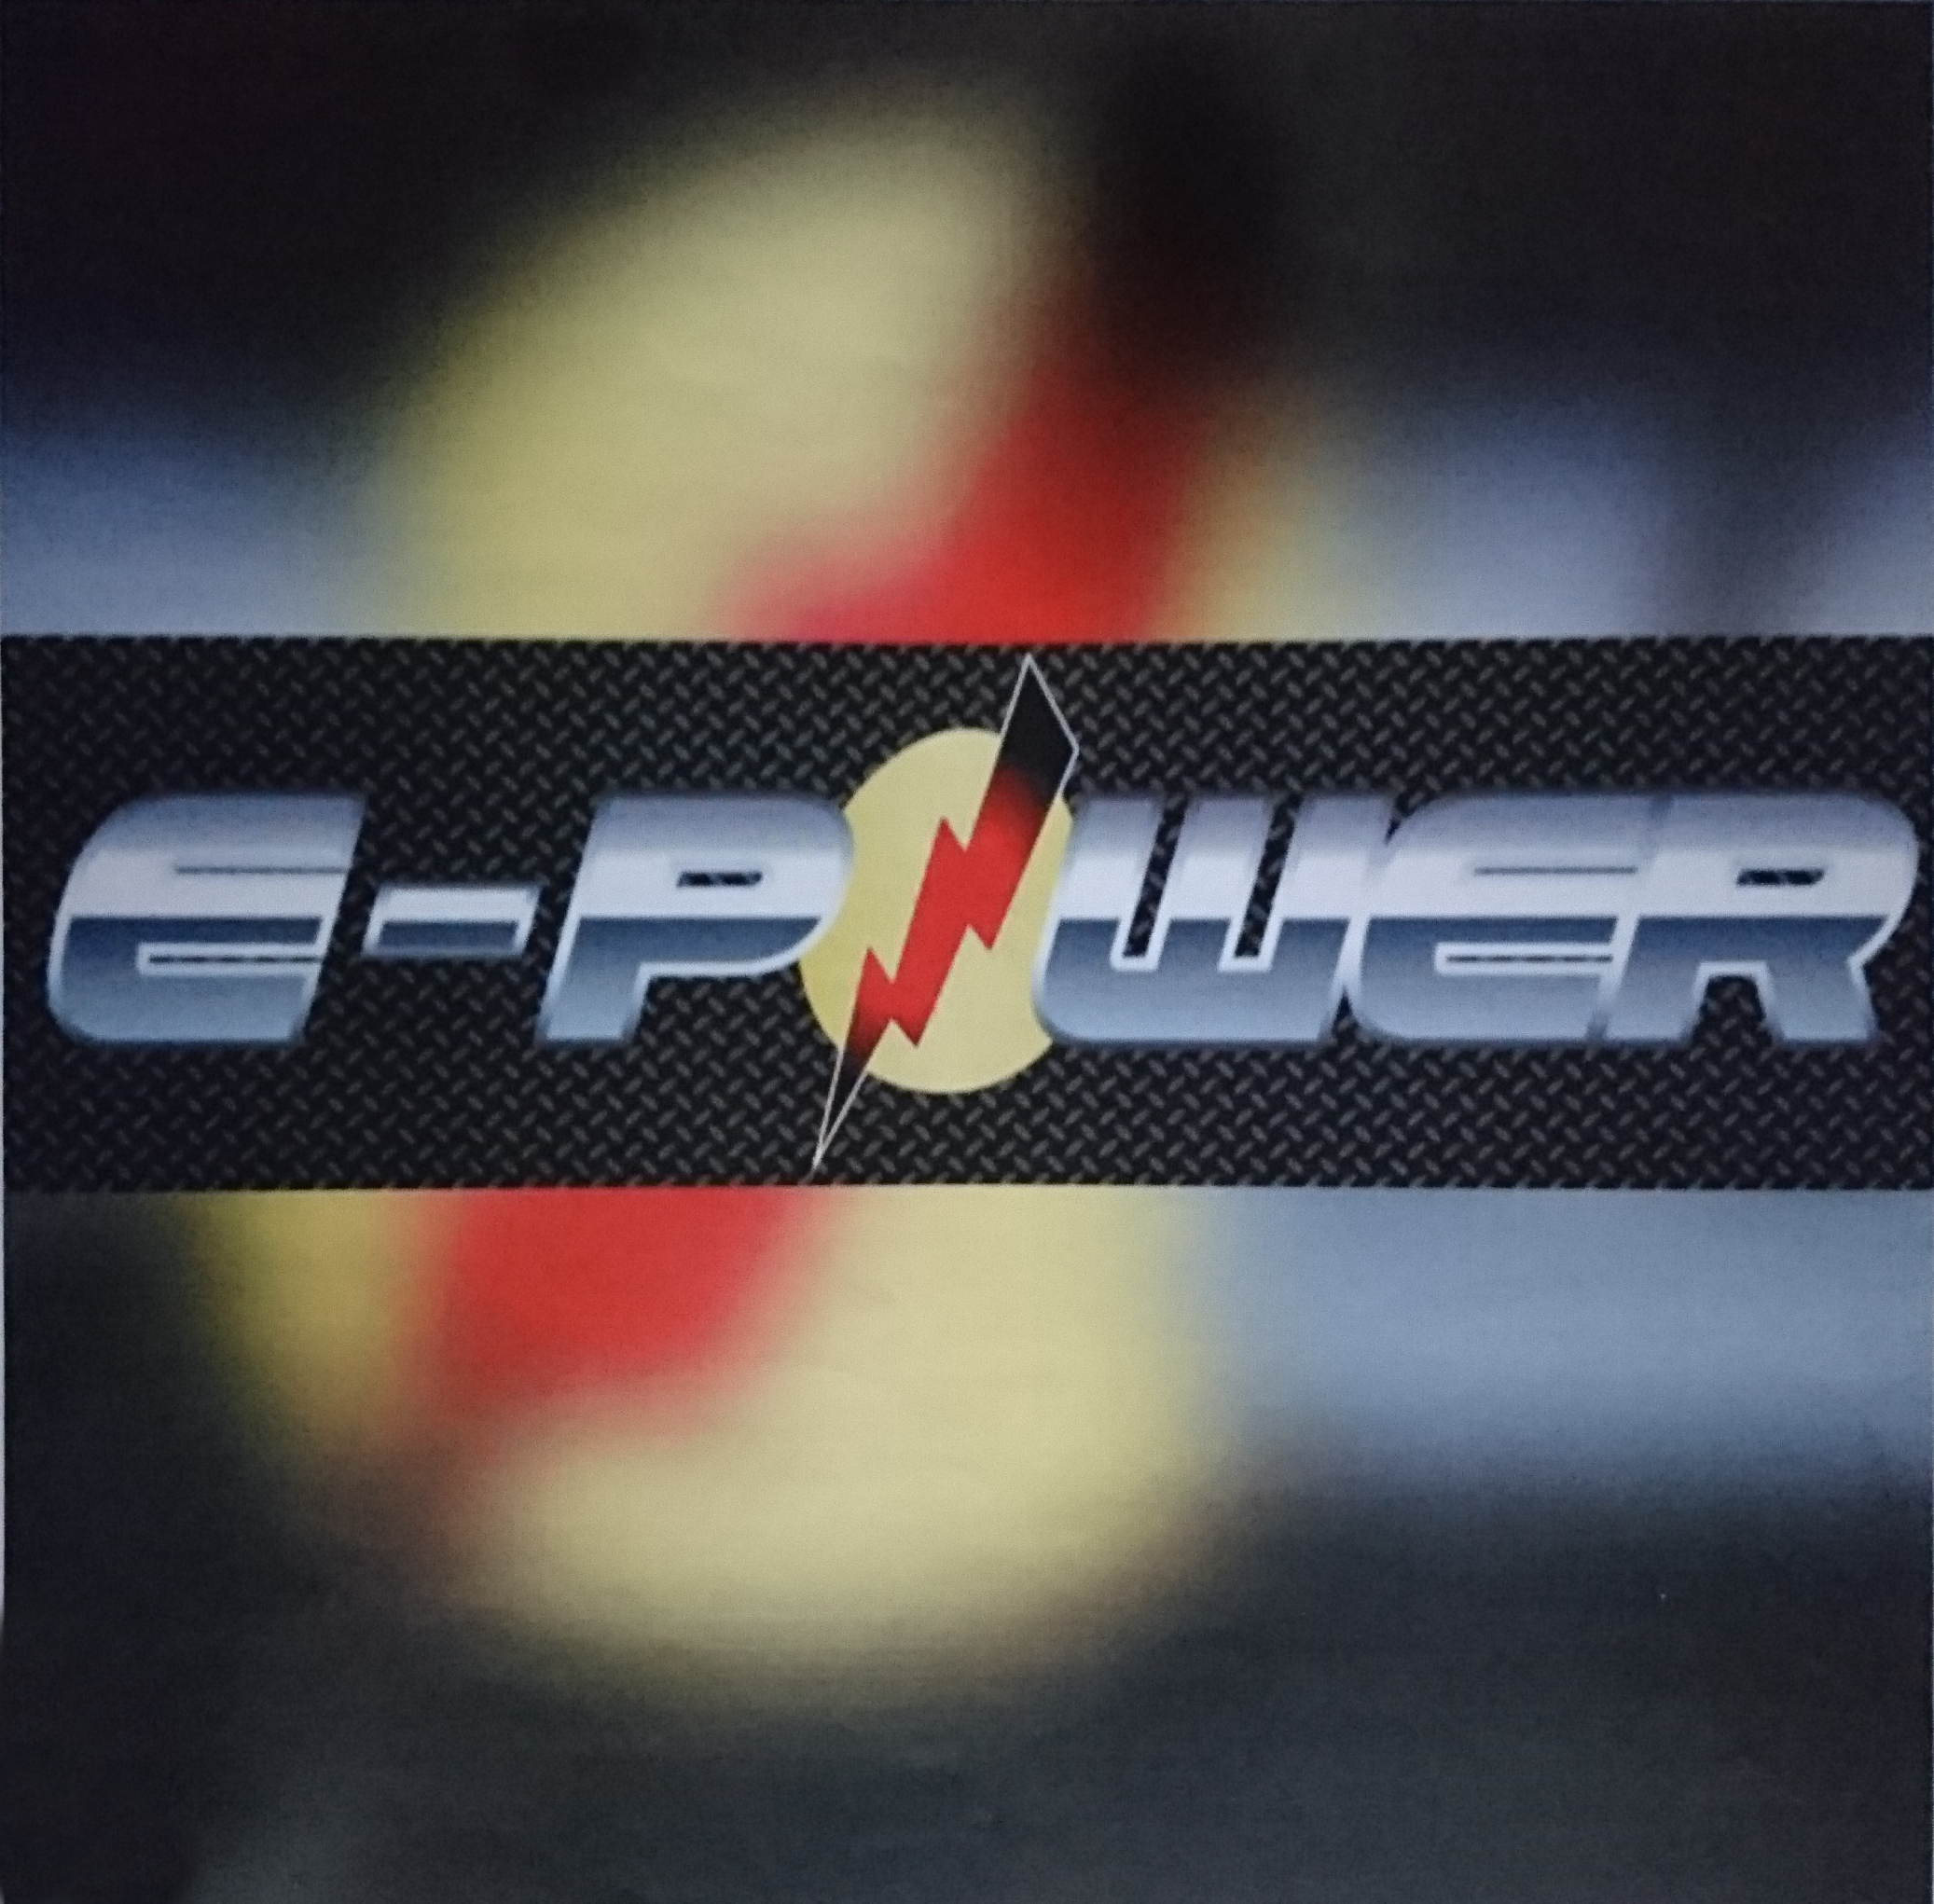 E-power